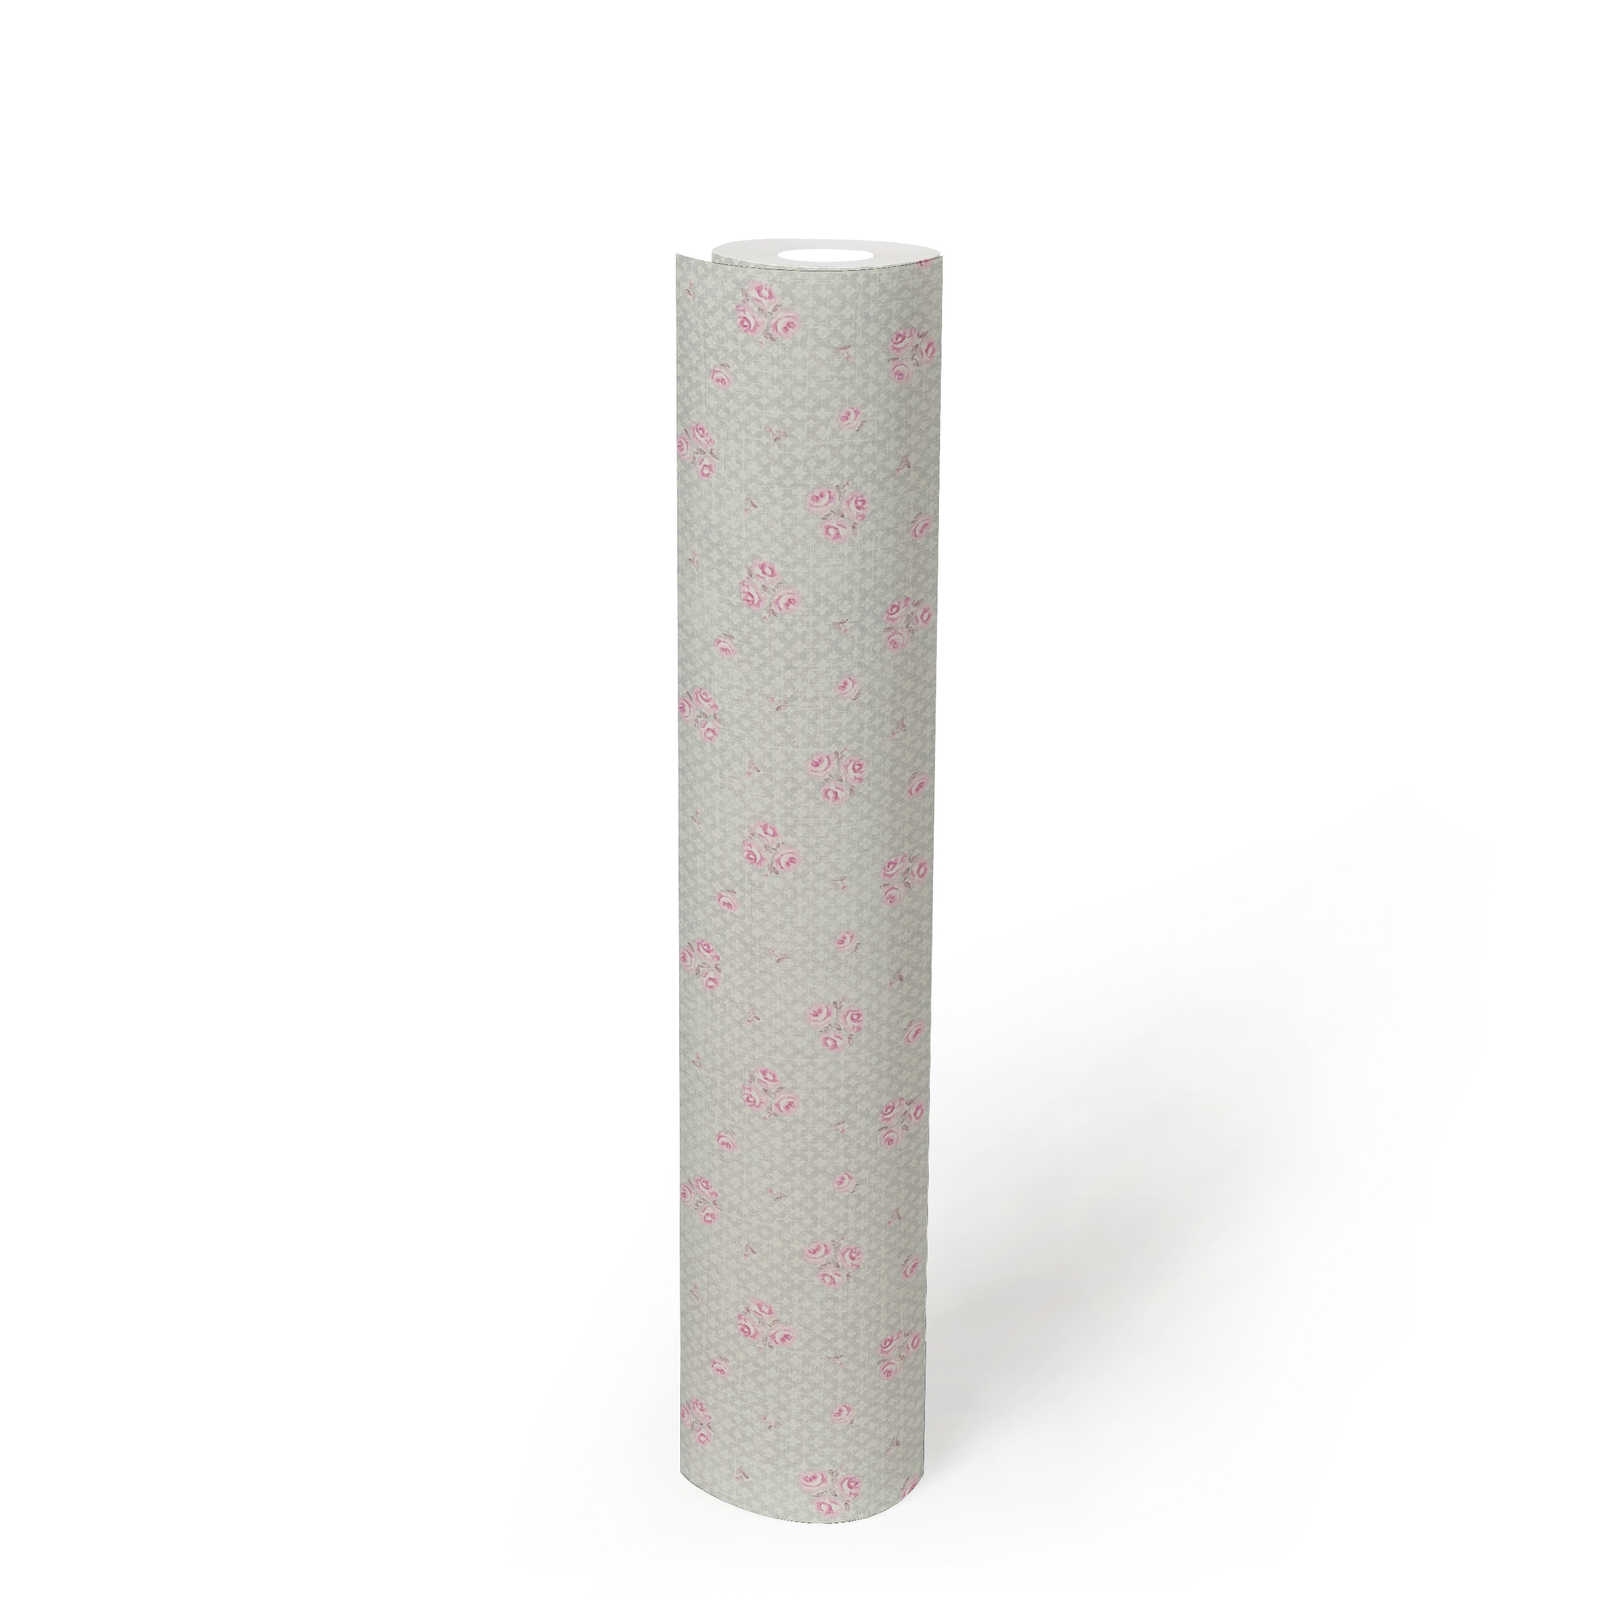             Papier peint intissé à motif floral style shabby chic - gris, rose, blanc
        